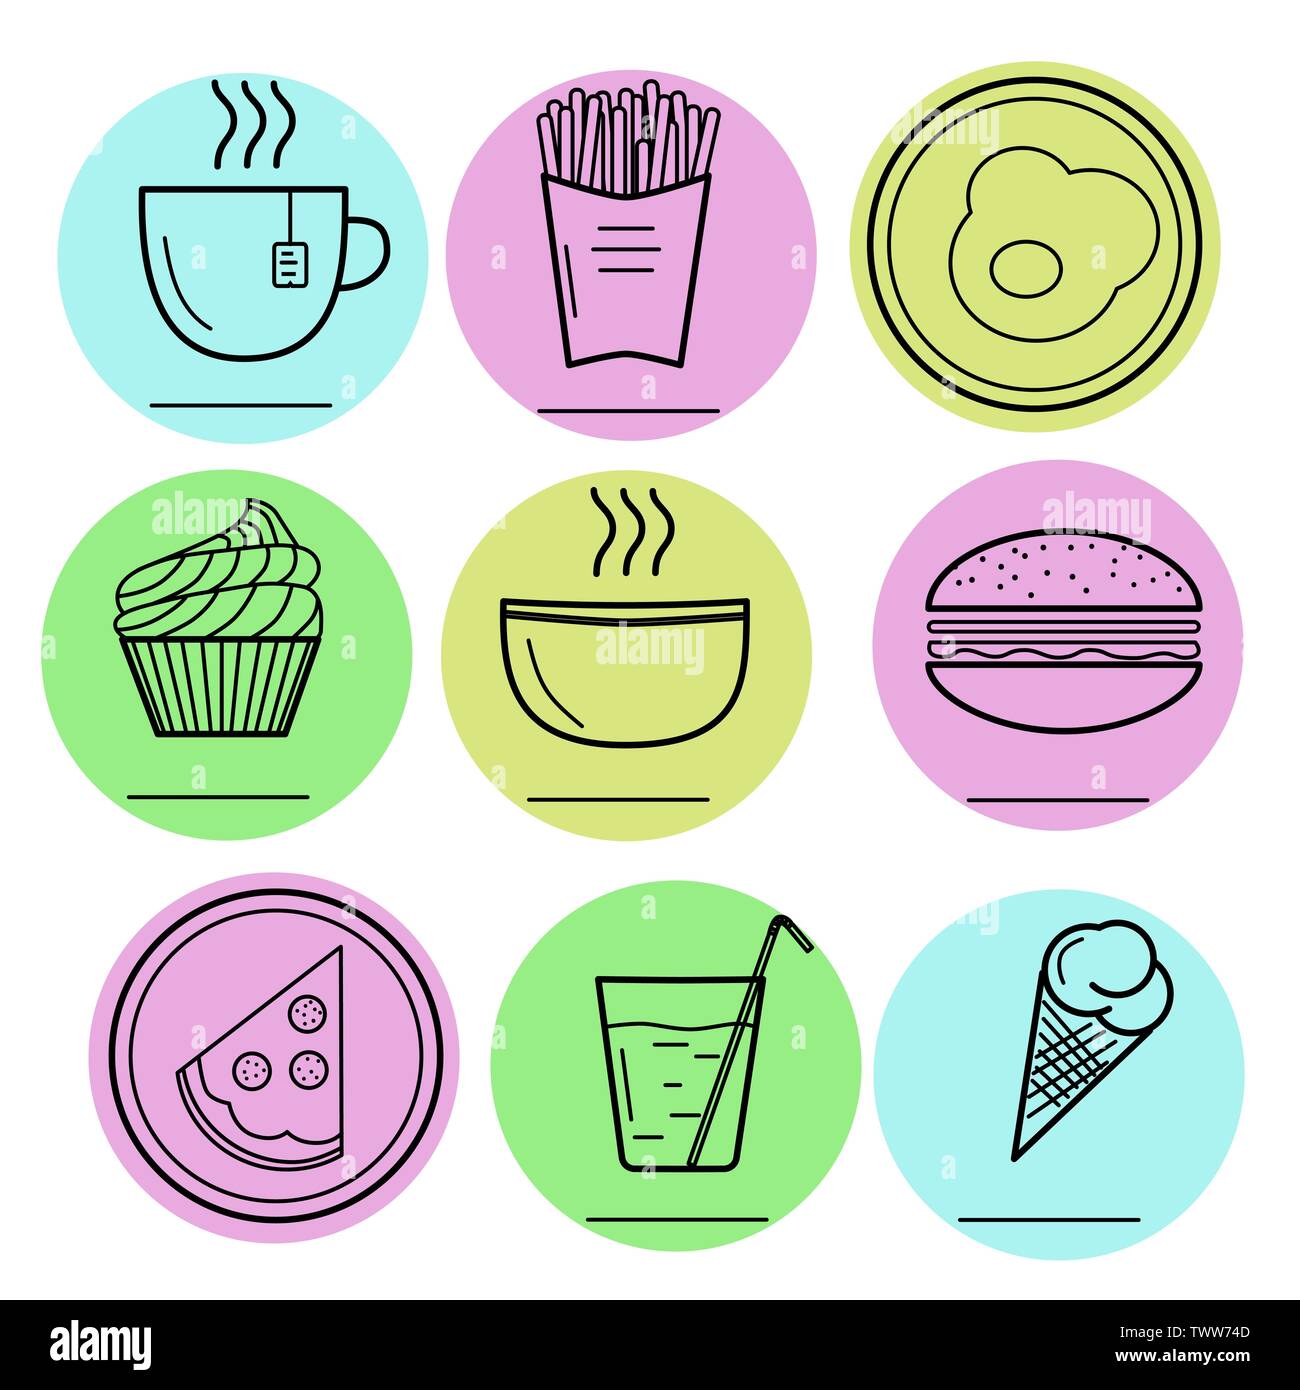 Illustrazione Vettoriale di cibo icone. Hamburger, uova fritte, pizza, piastra, zuppa calda, tè caldo, gelato, tortina, patatine fritte, acqua minerale, vetro, mug Illustrazione Vettoriale